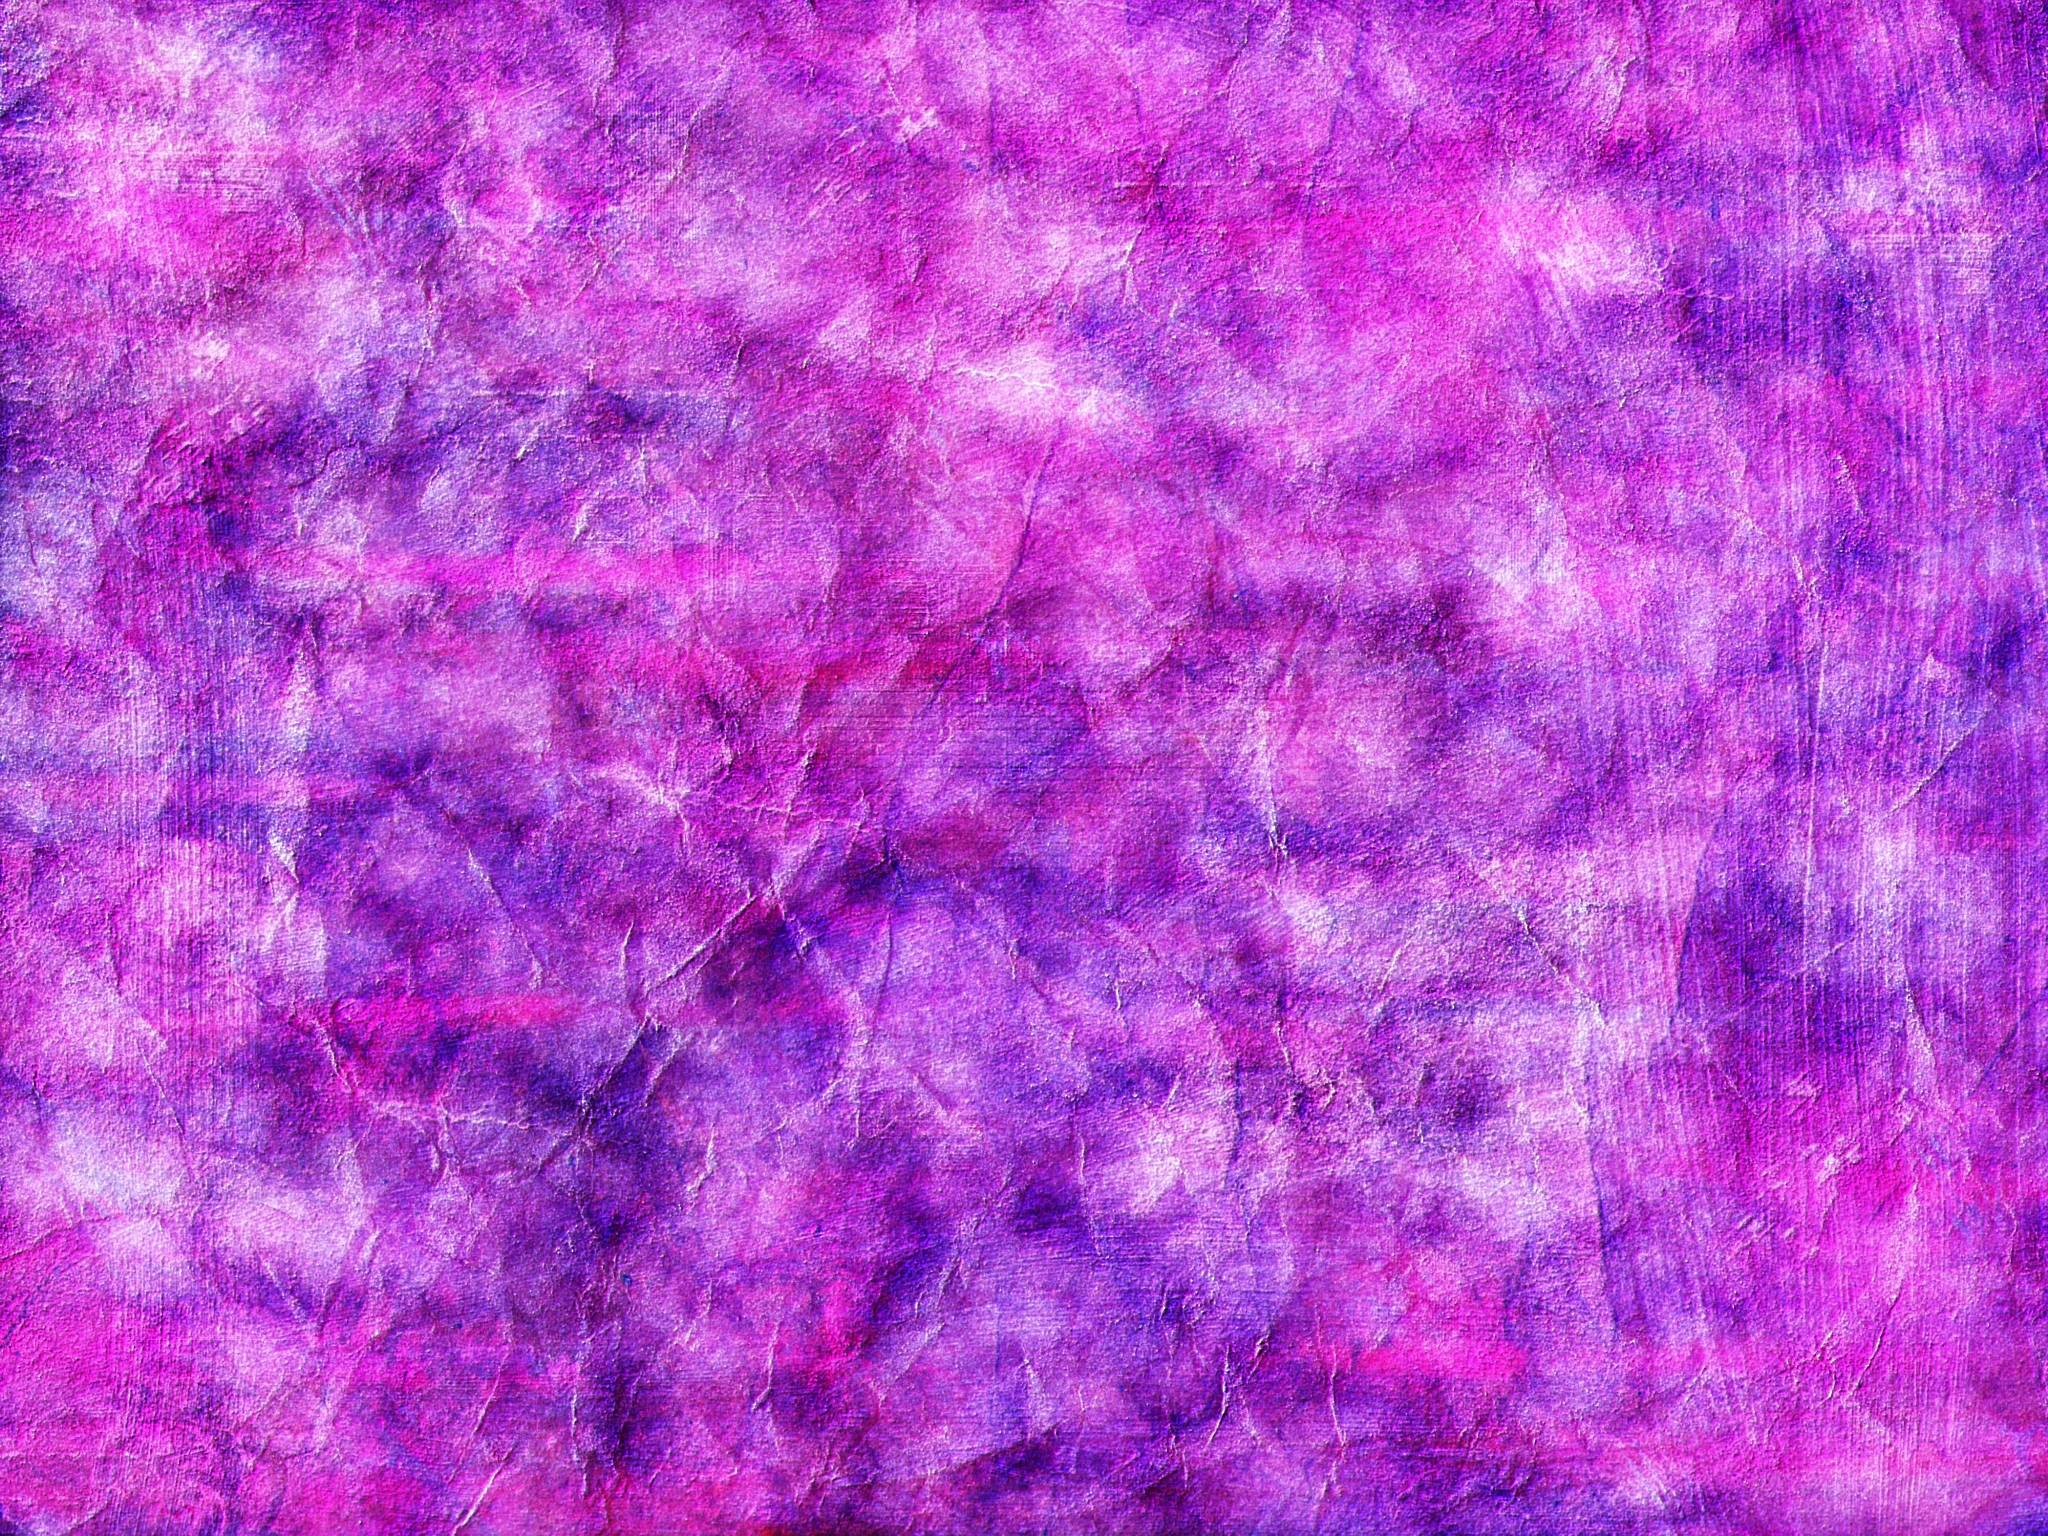 2048x1536 Grungy Purple-Pink Wallpaper by webgoddess on DeviantArt